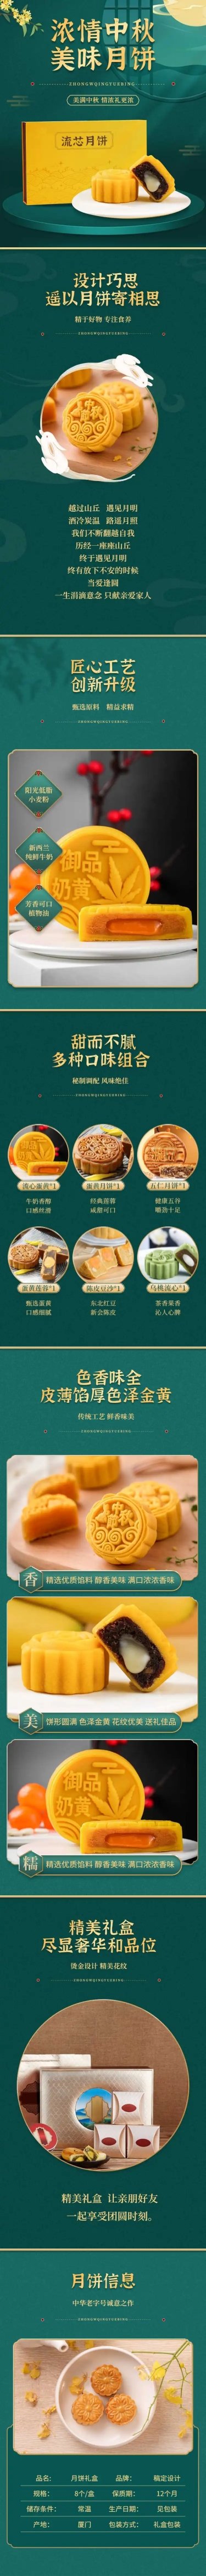 中国风中秋节食品月饼礼盒详情页预览效果